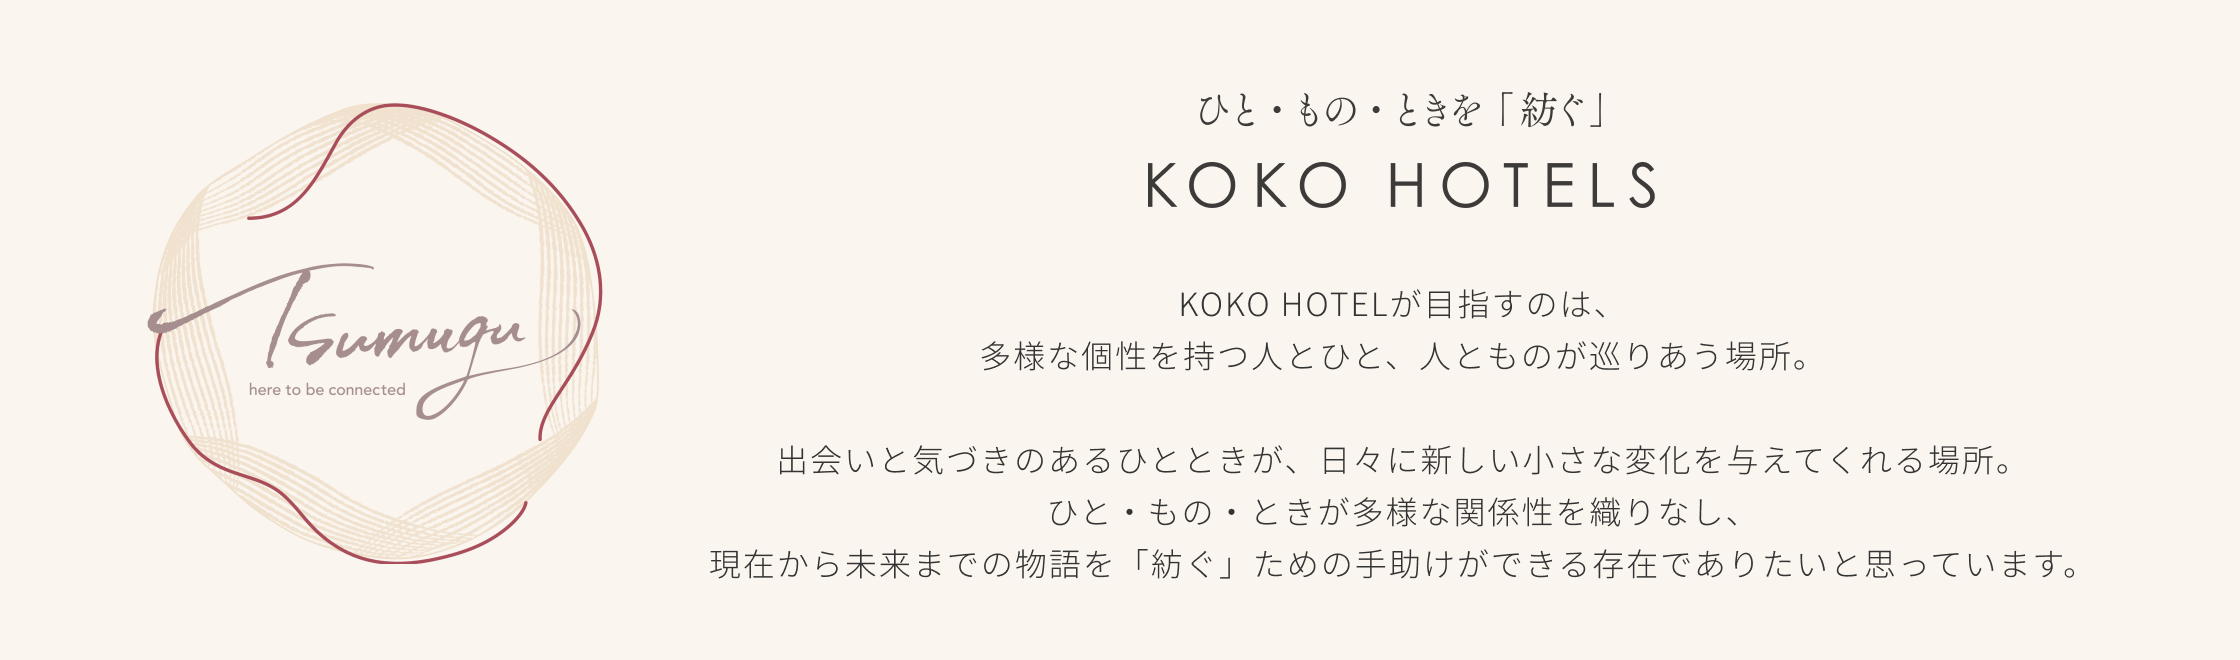 ひと・もの・ときを「紡ぐ」KOKO HOTELS